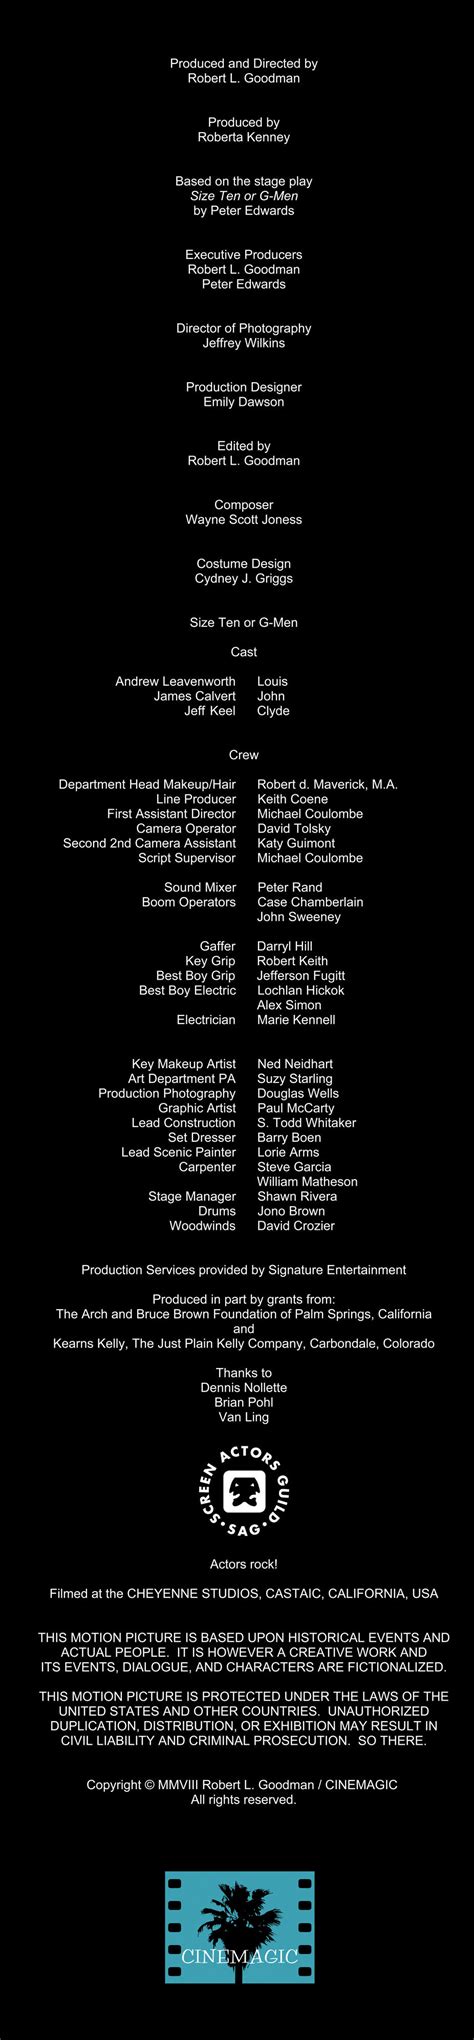 ZERO lyrics credits, cast, crew of song